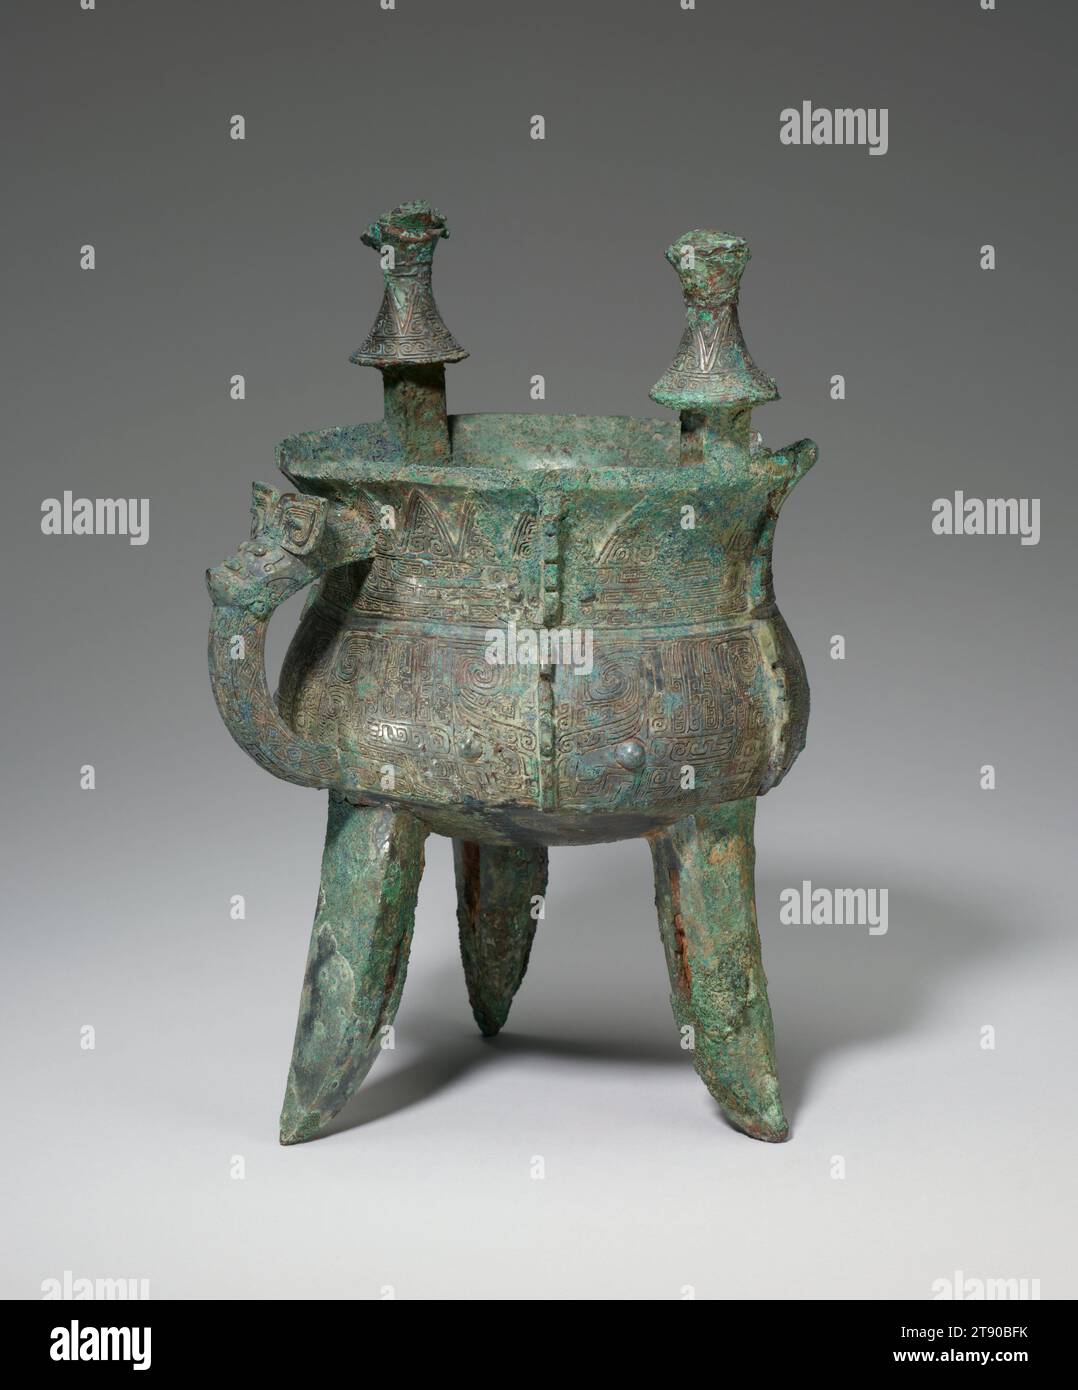 Récipient à vin Jia, 13e-12e siècle av. J.-C., 10 13/16 × 7 1/2 × 7 13/16 po., 5,7 lb. (27,46 × 19,05 × 19,84 cm, 2,6 kg), Bronze, Chine, 13e-12e siècle av. J.-C. Banque D'Images